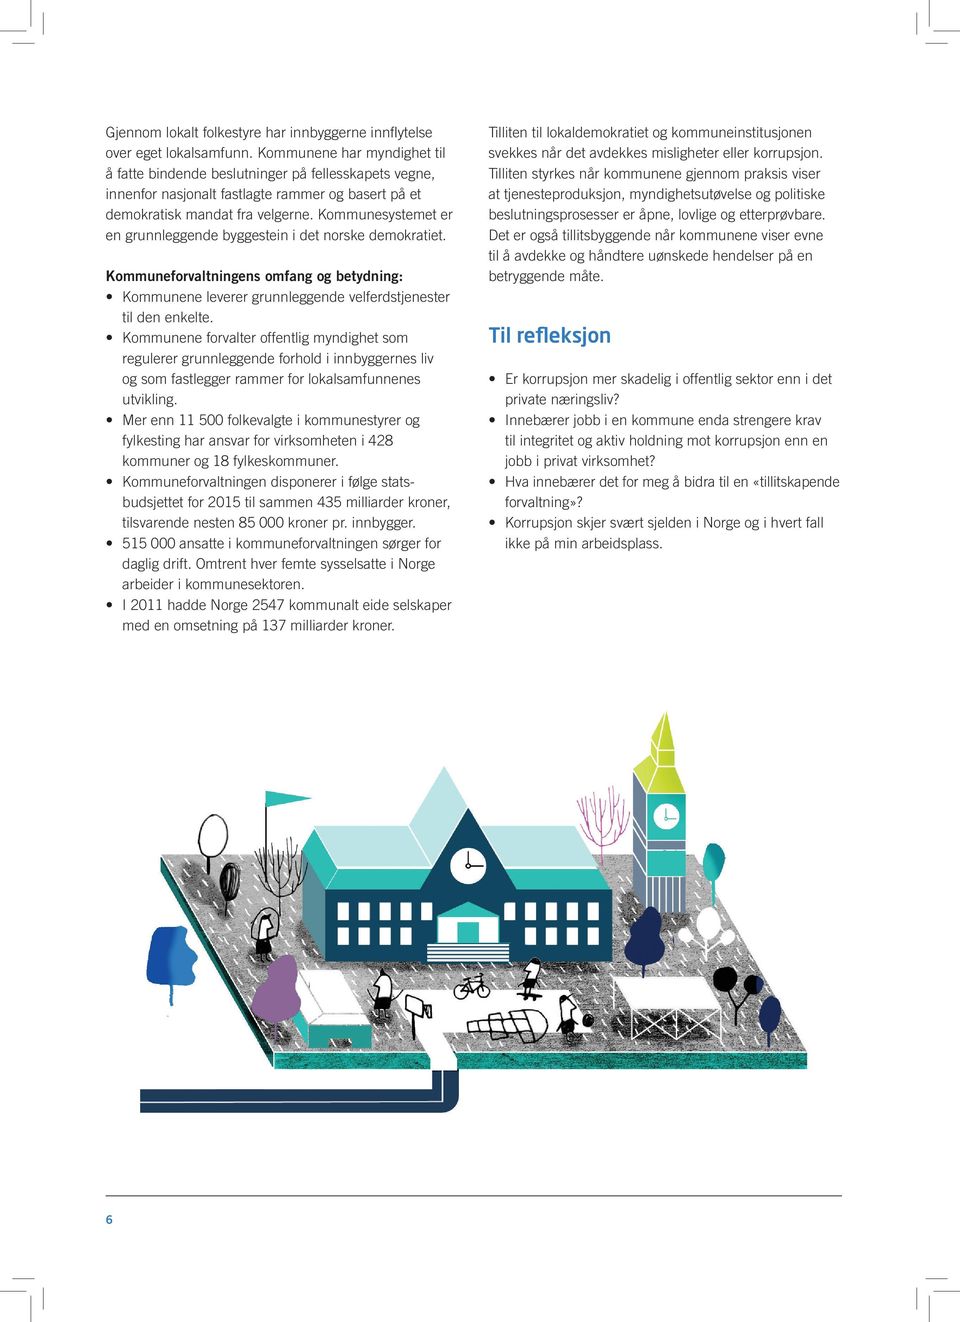 Kommunesystemet er en grunnleggende byggestein i det norske demokratiet. Kommuneforvaltningens omfang og betydning: Kommunene leverer grunnleggende velferdstjenester til den enkelte.